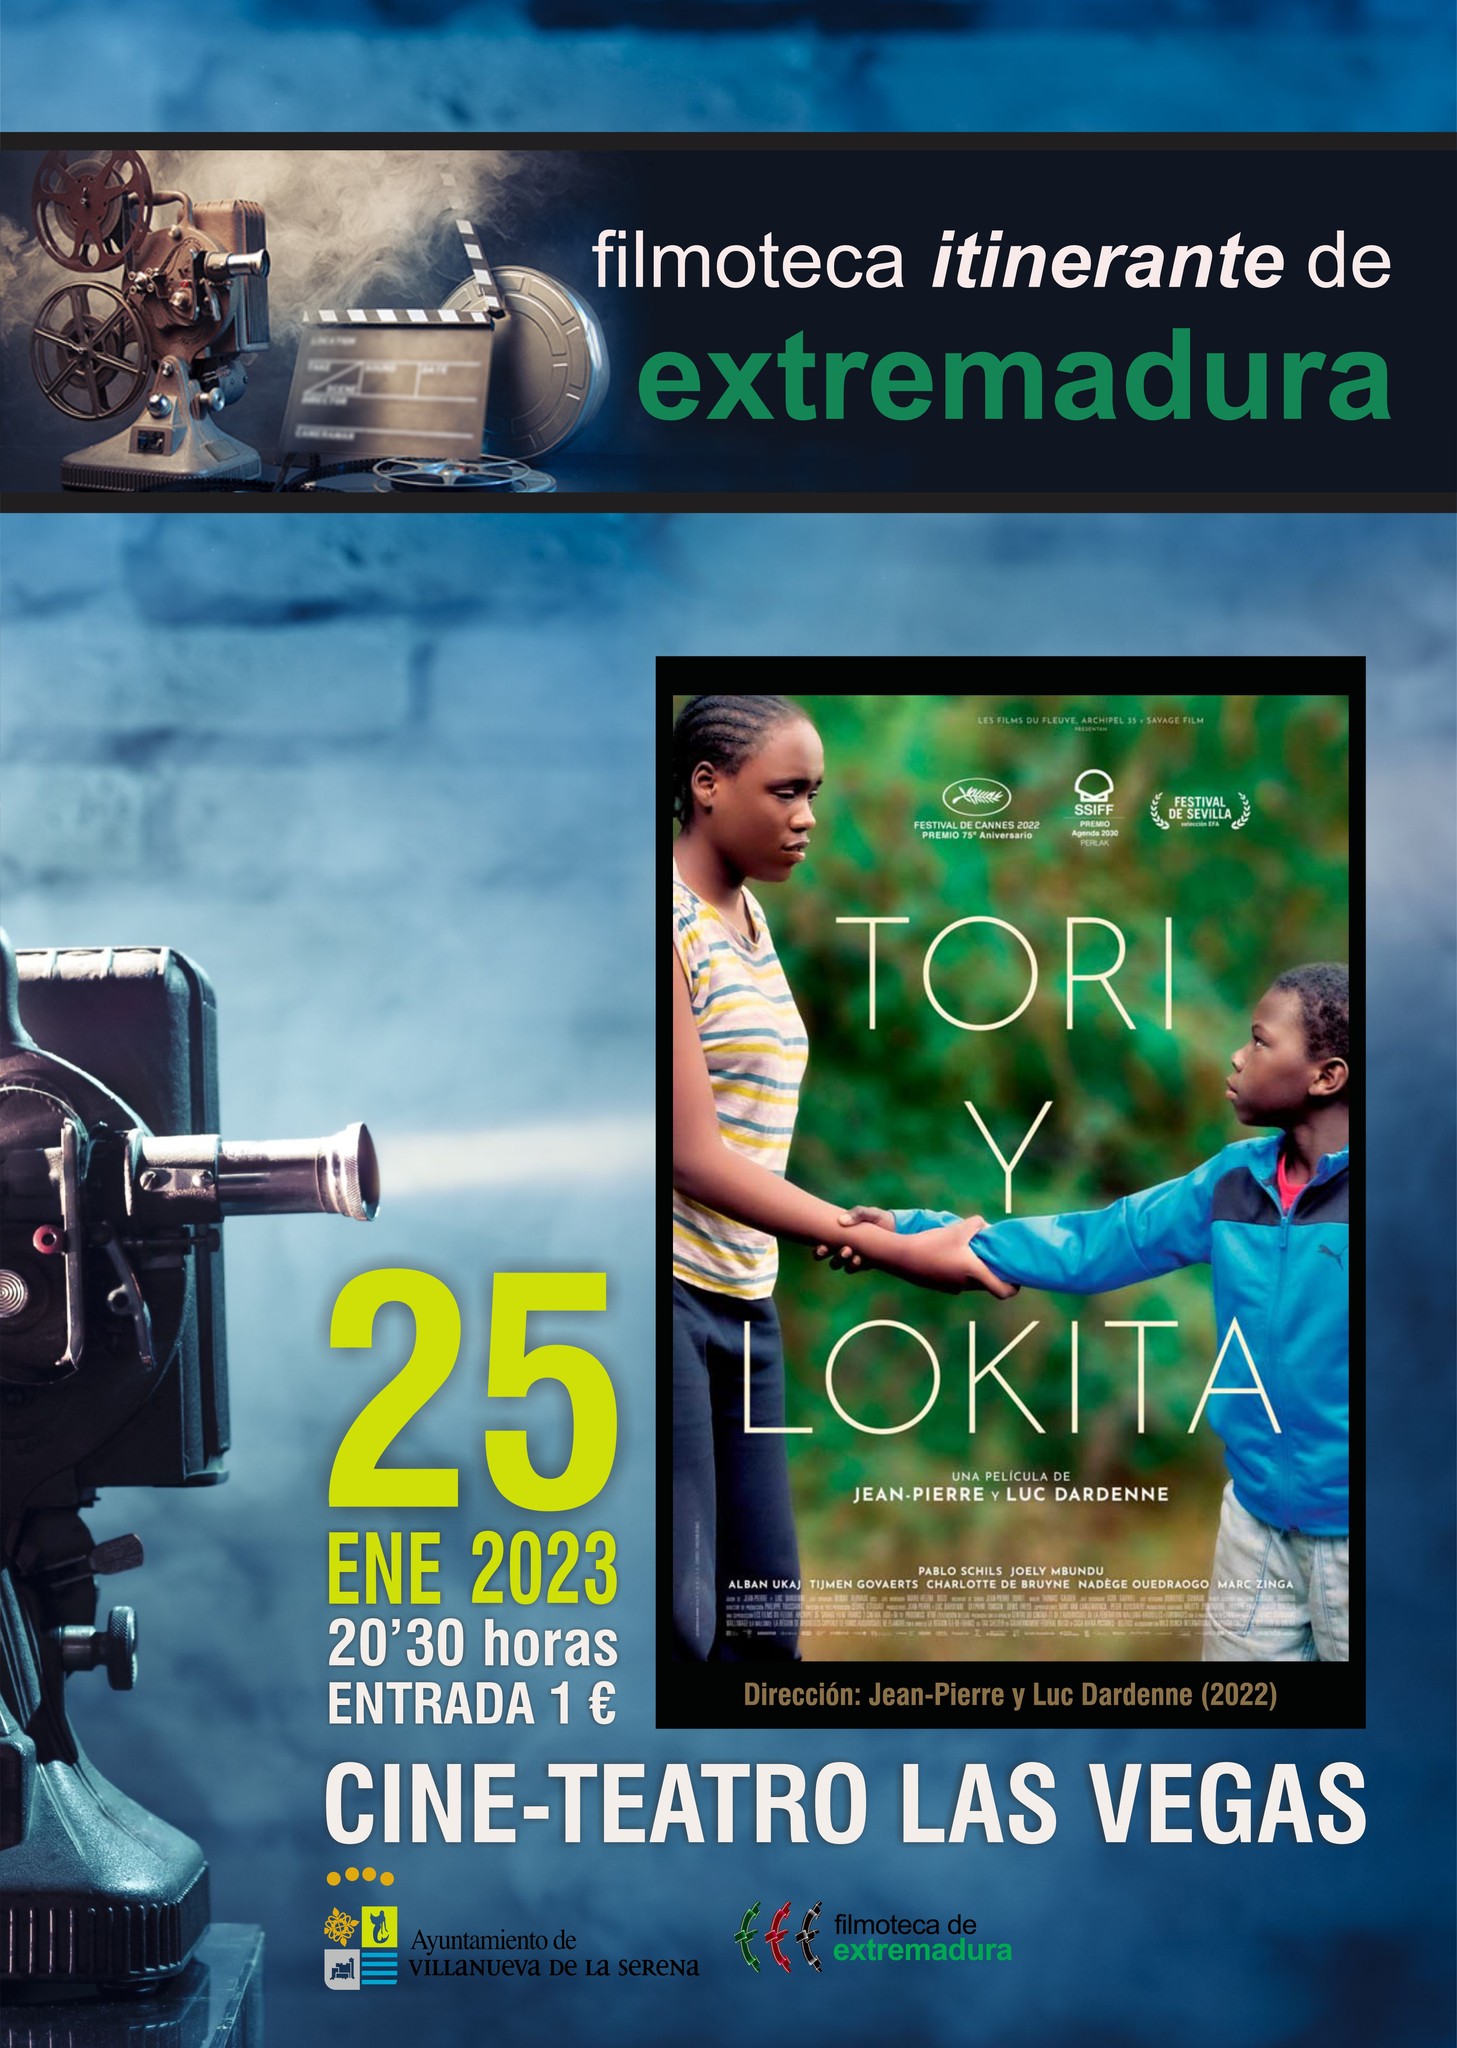 Filmoteca Itinerante de Extremadura presenta 'Tori y Lokita' una película de Jean-Pierra y Luc Darde